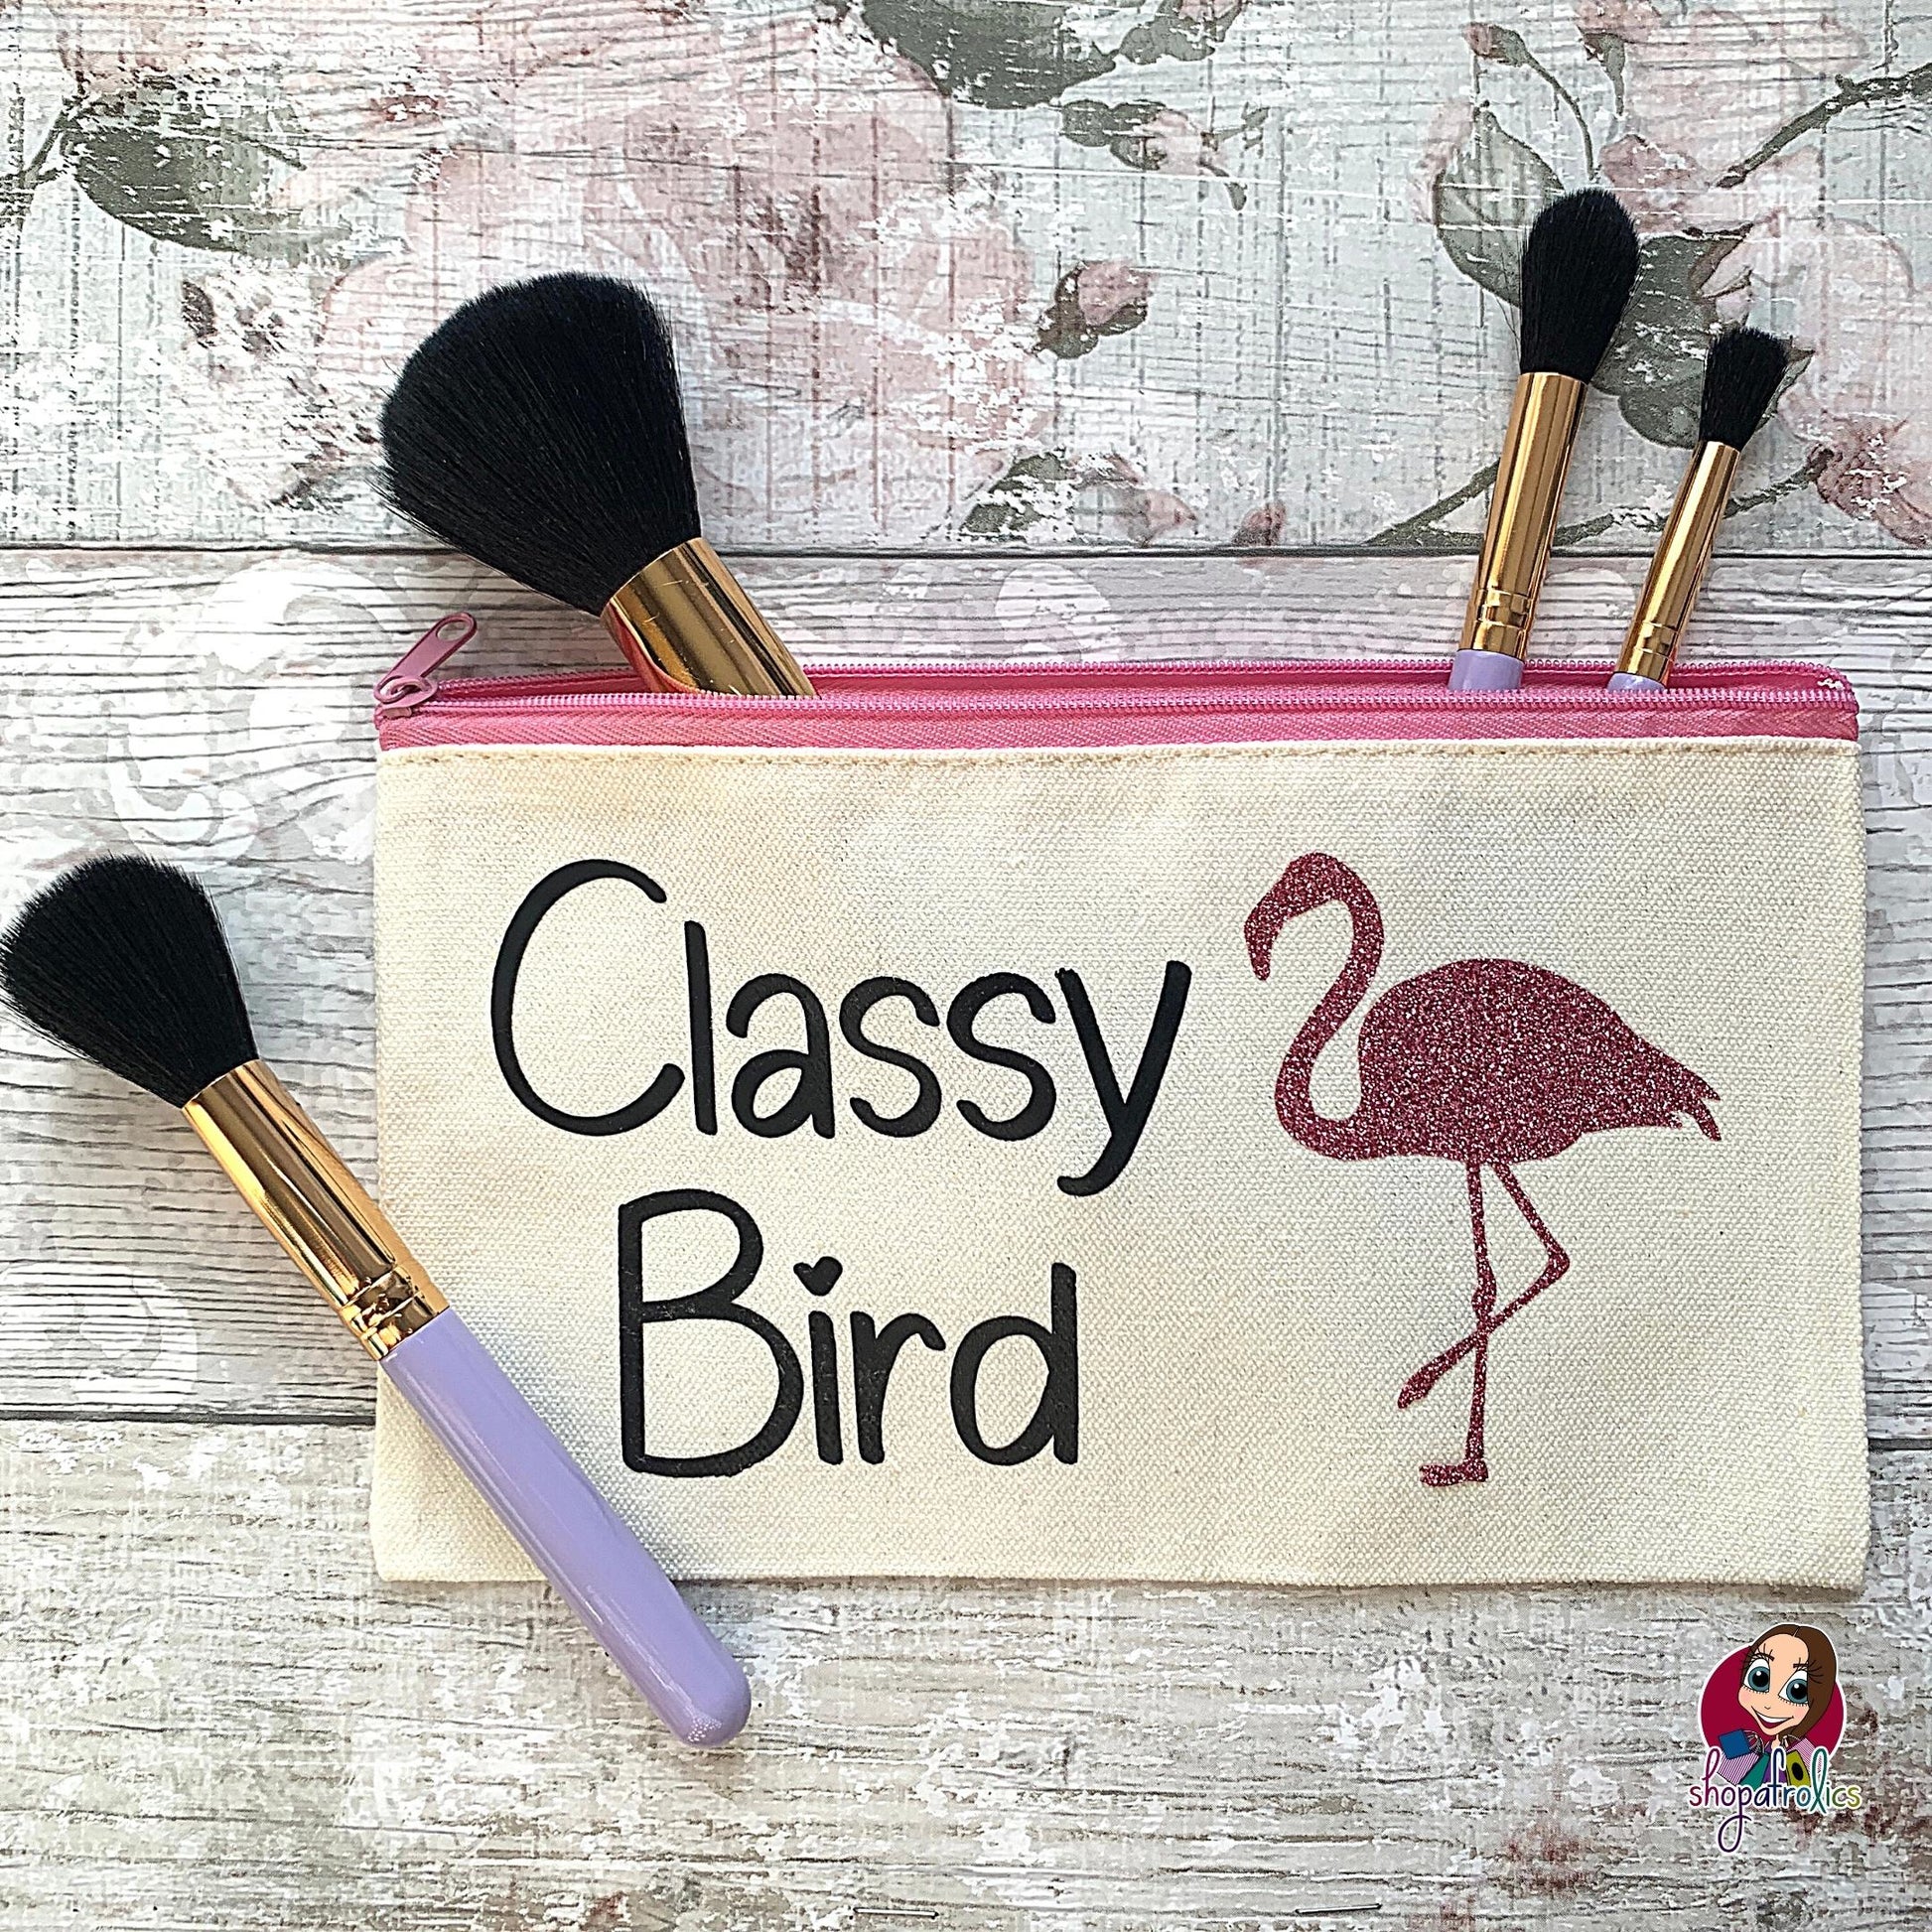 Classy Bird Flamingo make up bag